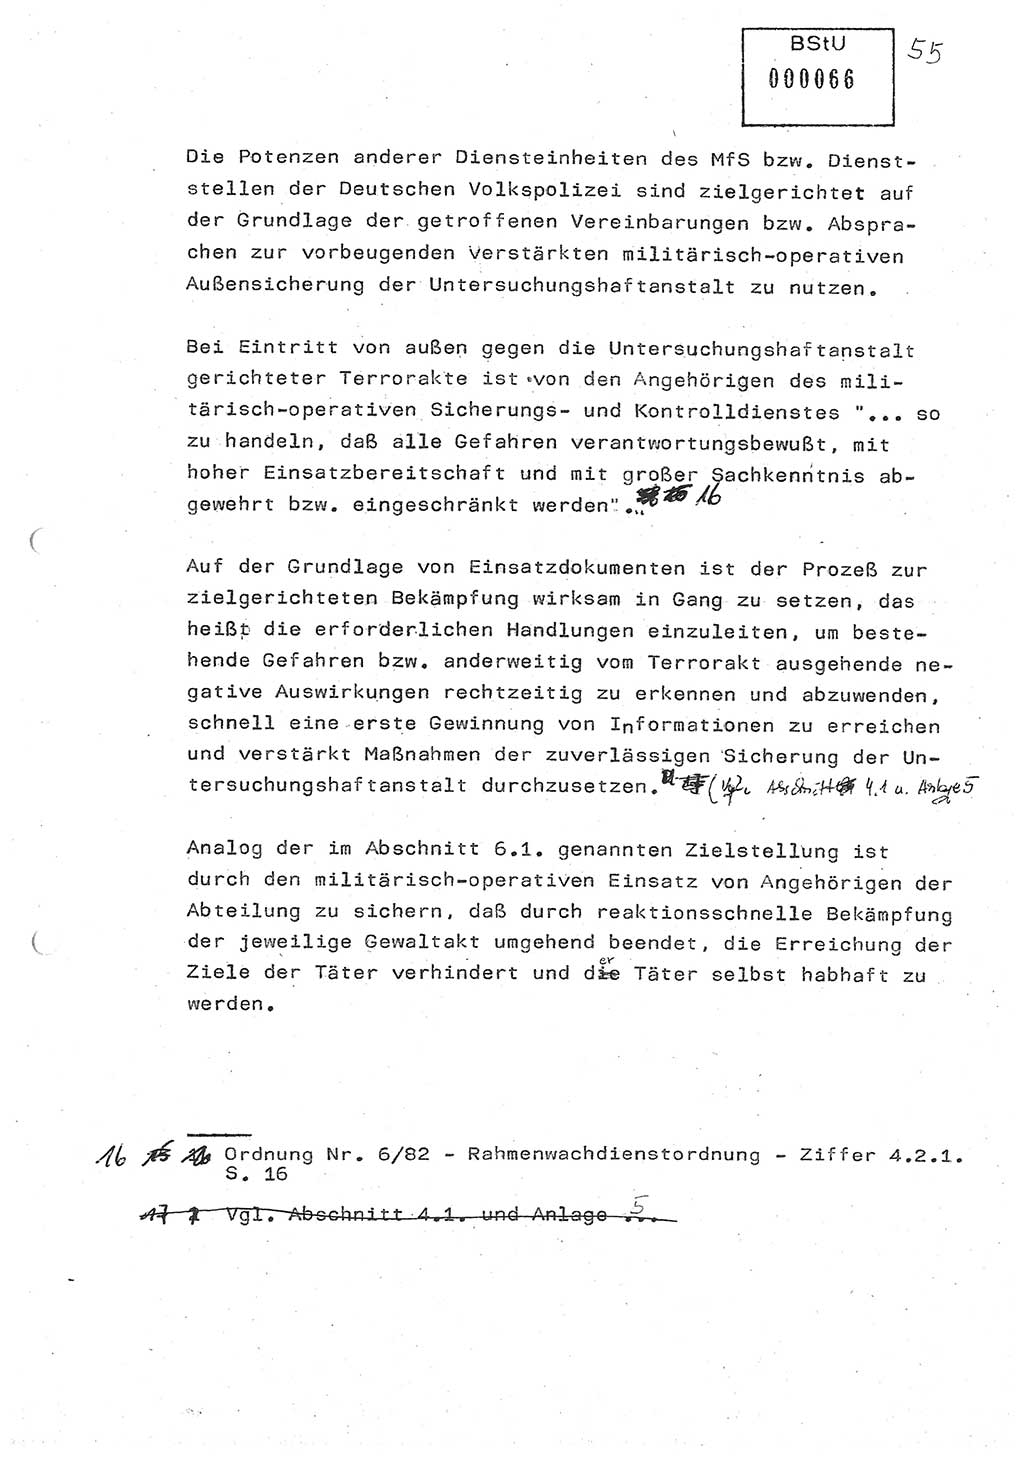 Diplomarbeit (Entwurf) Oberleutnant Peter Parke (Abt. ⅩⅣ), Ministerium für Staatssicherheit (MfS) [Deutsche Demokratische Republik (DDR)], Juristische Hochschule (JHS), Geheime Verschlußsache (GVS) o001-98/86, Potsdam 1986, Seite 66 (Dipl.-Arb. MfS DDR JHS GVS o001-98/86 1986, S. 66)